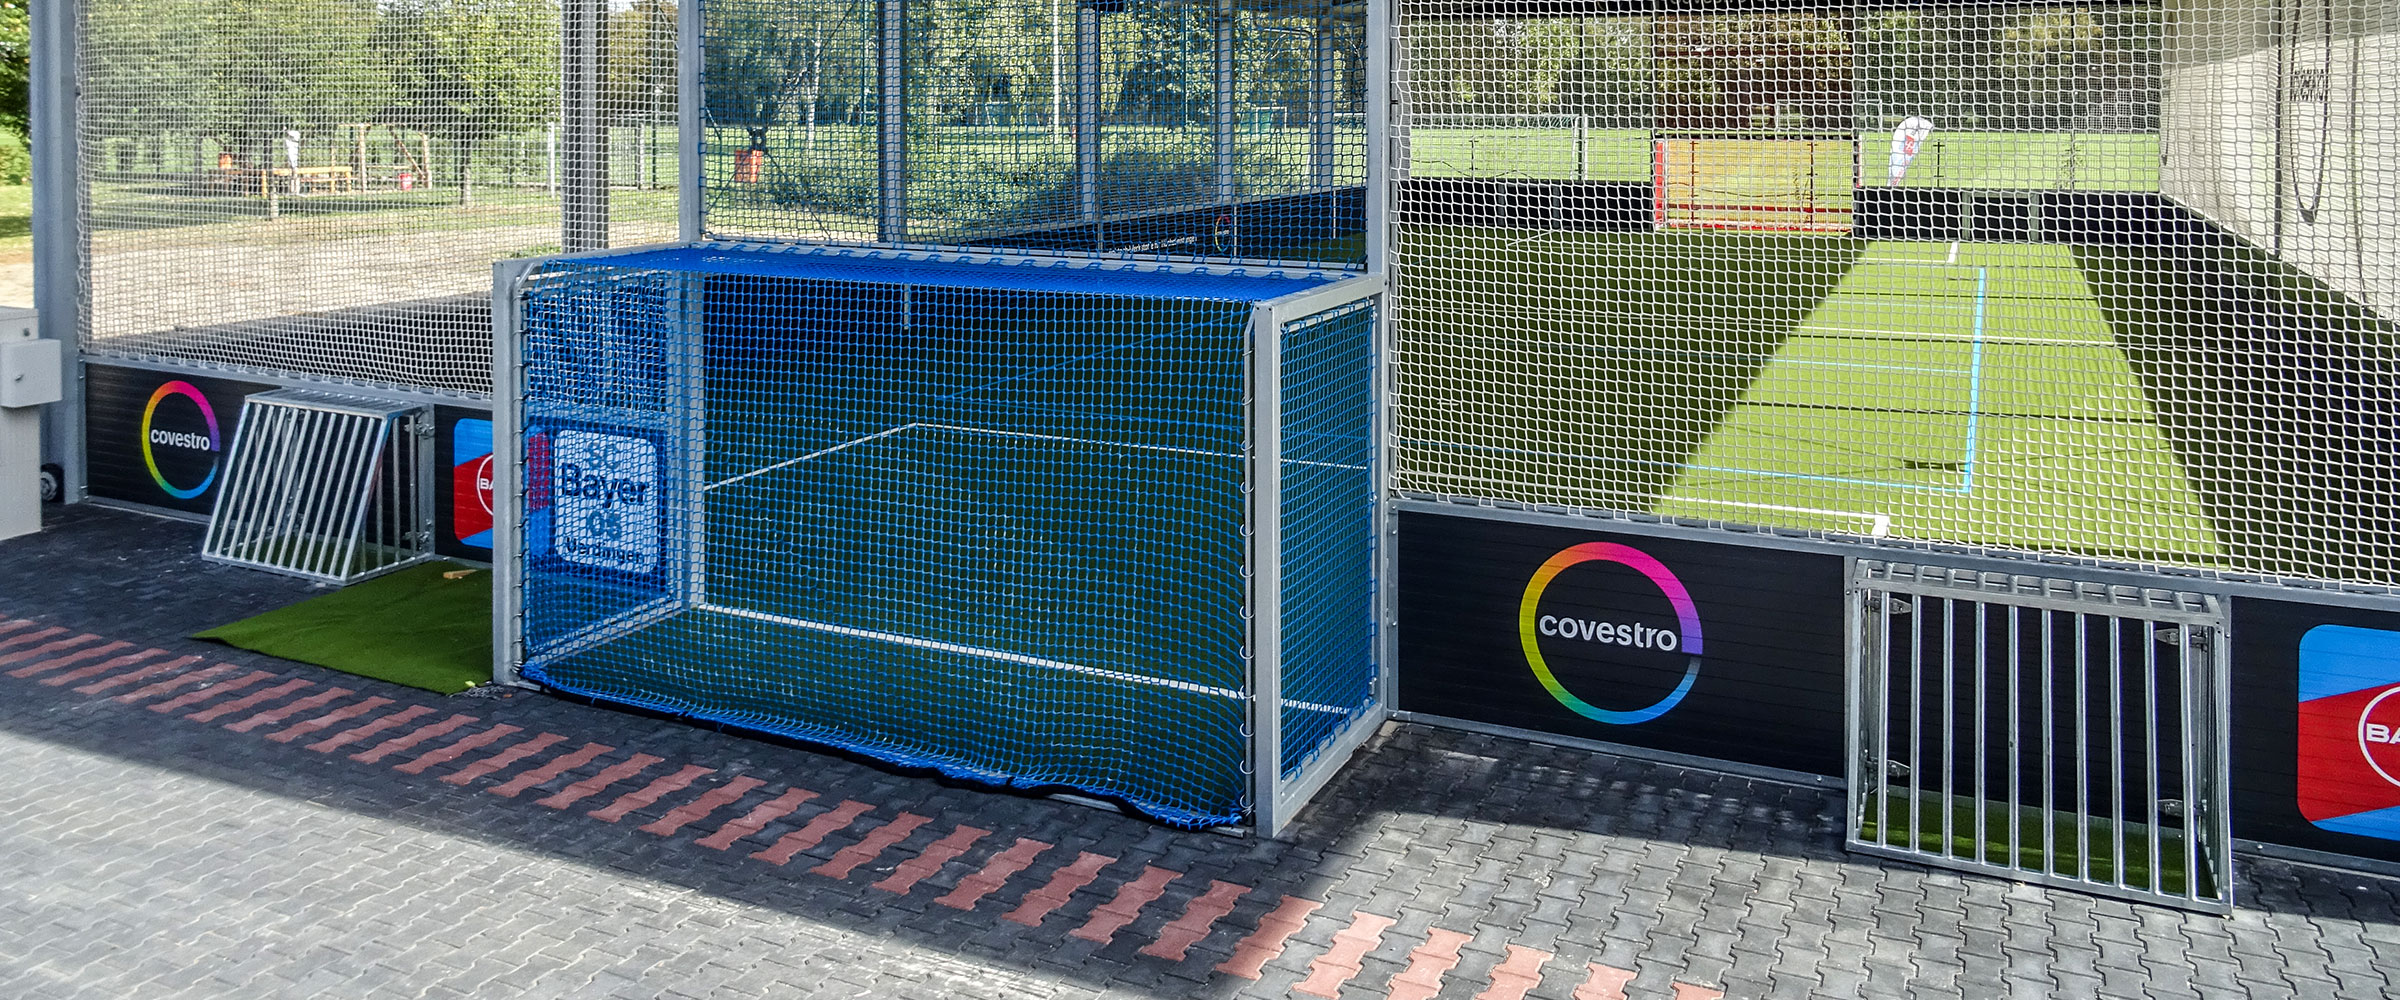 Das vom DFB empfohlene FUNino auf Minitore kann in der Soccerhalle Krefeld gespielt werden.